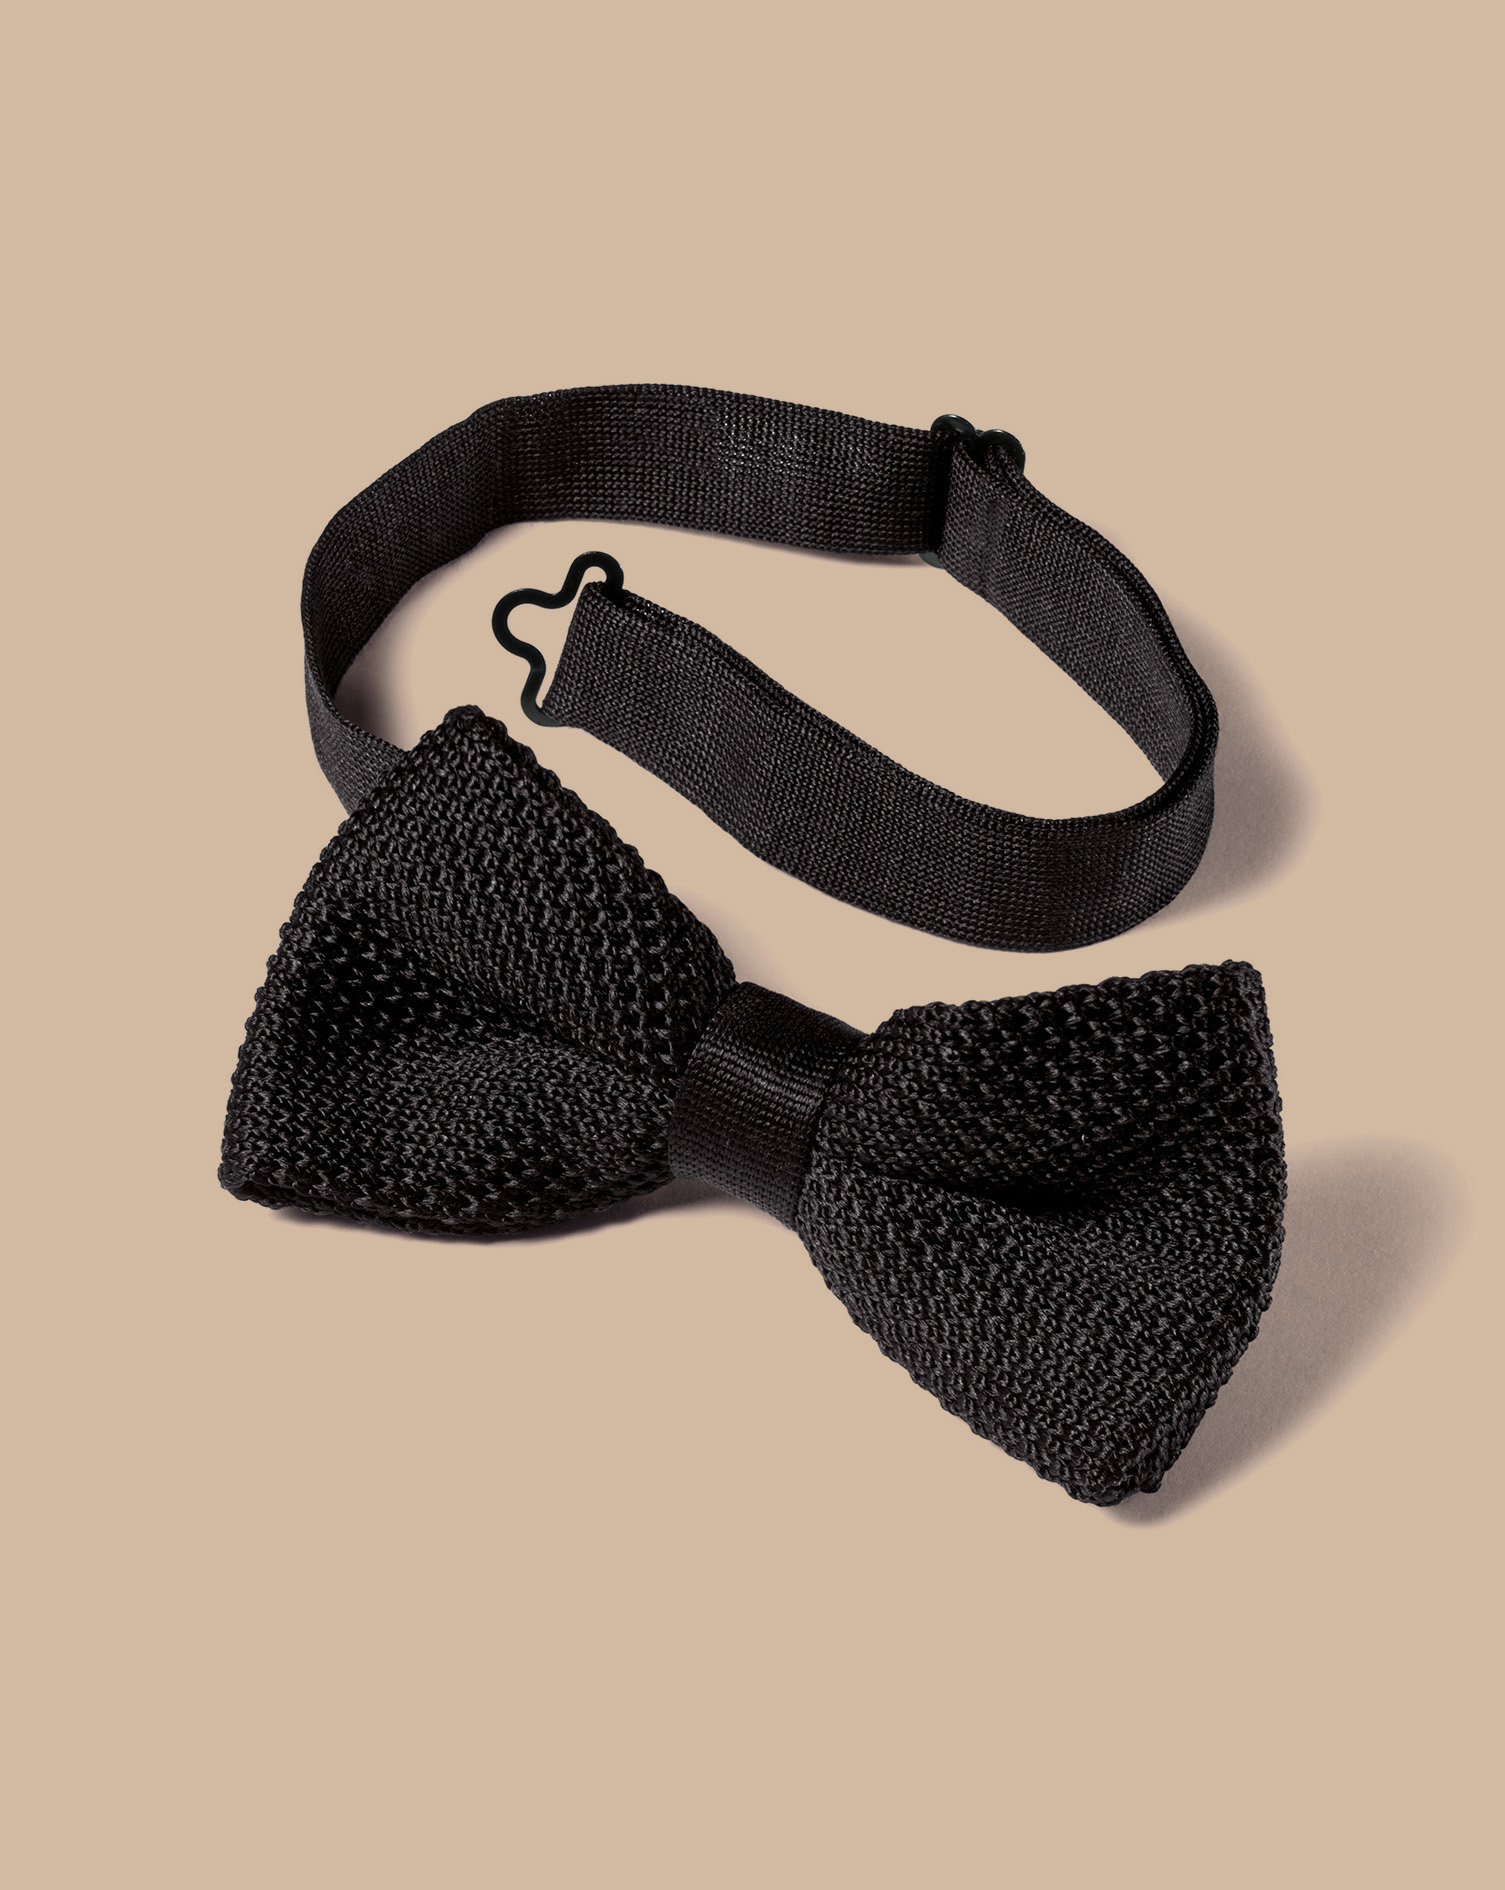 Men's Charles Tyrwhitt Knitted Bow Tie - Black Silk
